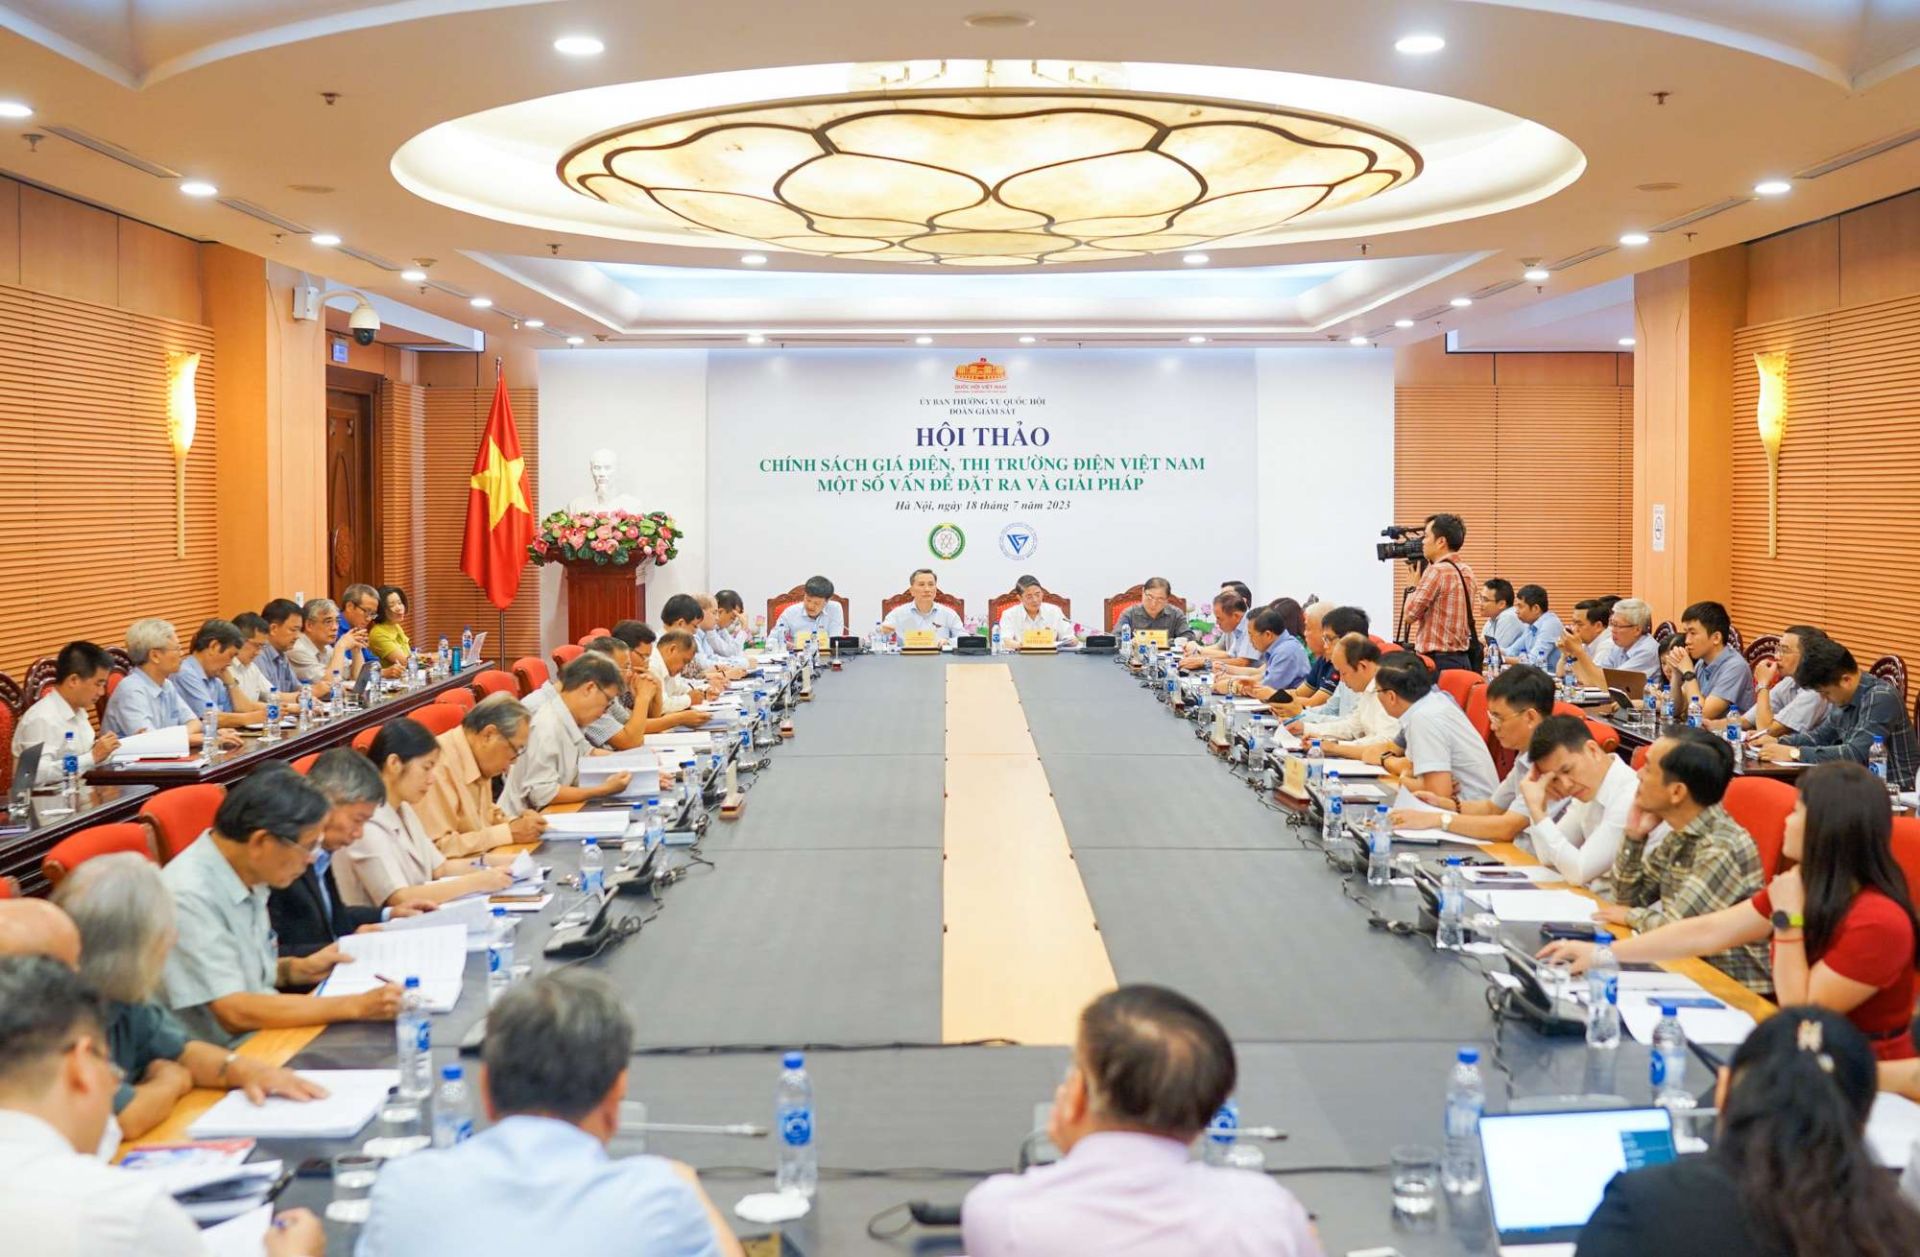 Hội thảo “Chính sách giá điện, thị trường điện Việt Nam - Một số vấn đề đặt ra và giải pháp”